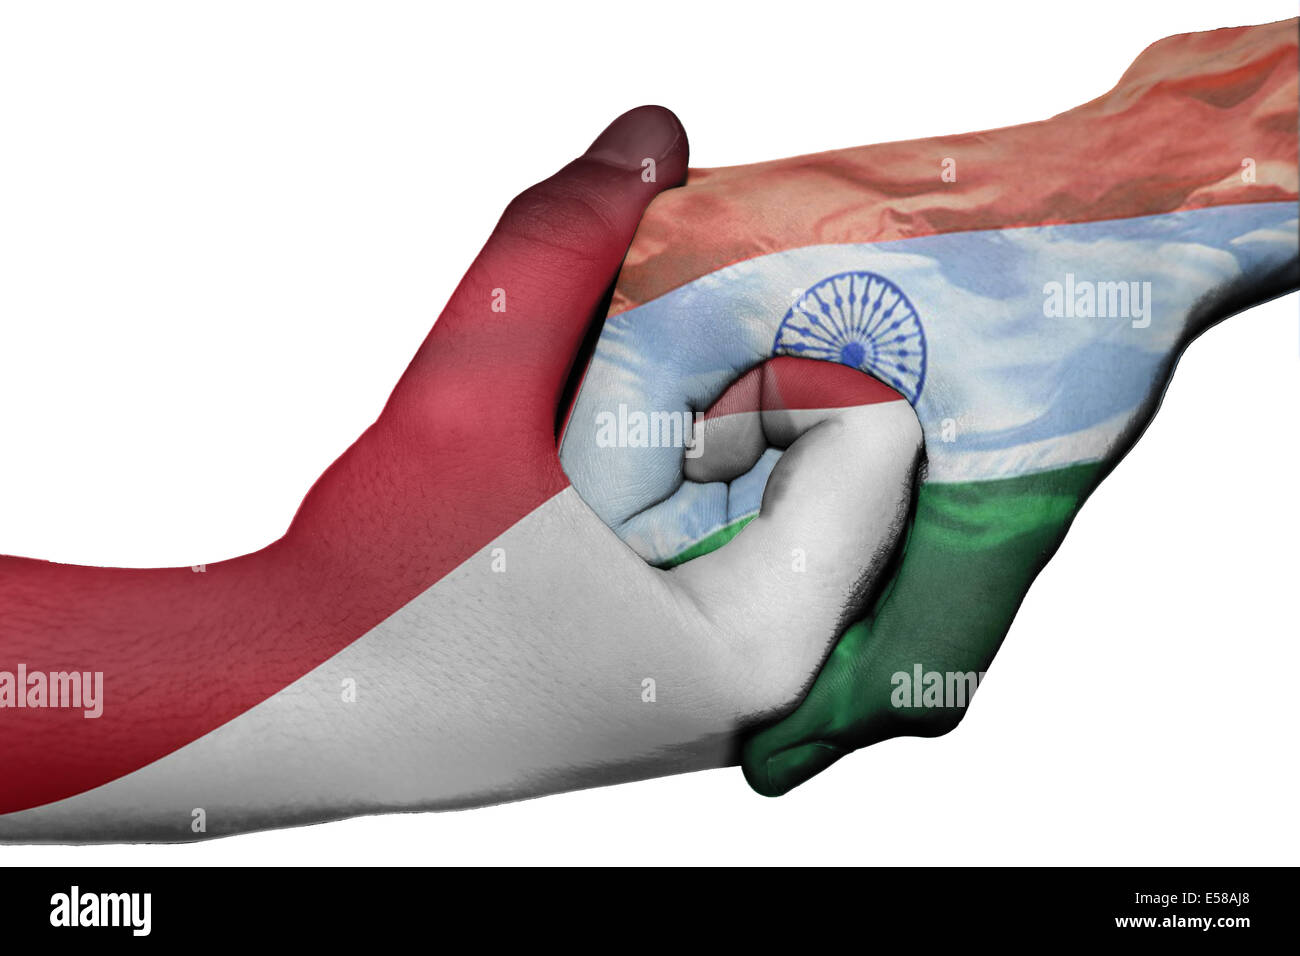 Handshake diplomatiche tra paesi: bandiere di Indonesia e l'India sovradipinta le due mani Foto Stock